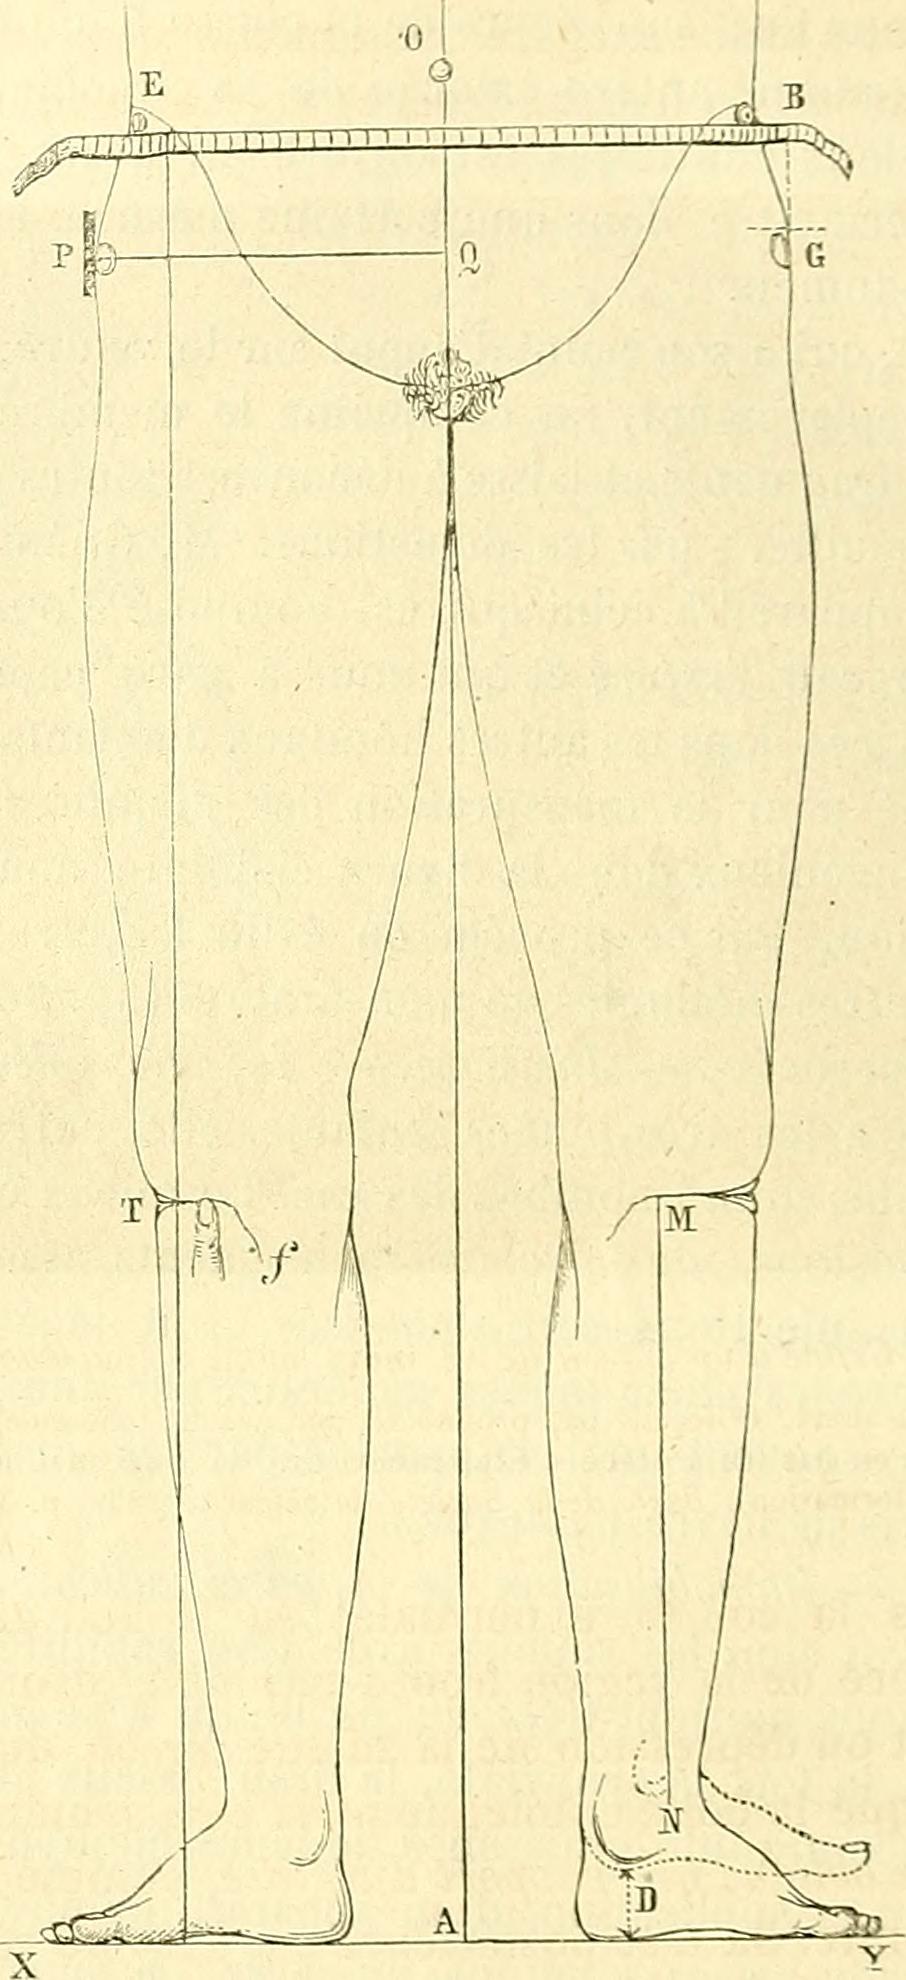 Image from page 679 of "Chirurgie journalière des hopitaux de Paris : répertoire de thérapeutique chirurgicale" (1878)